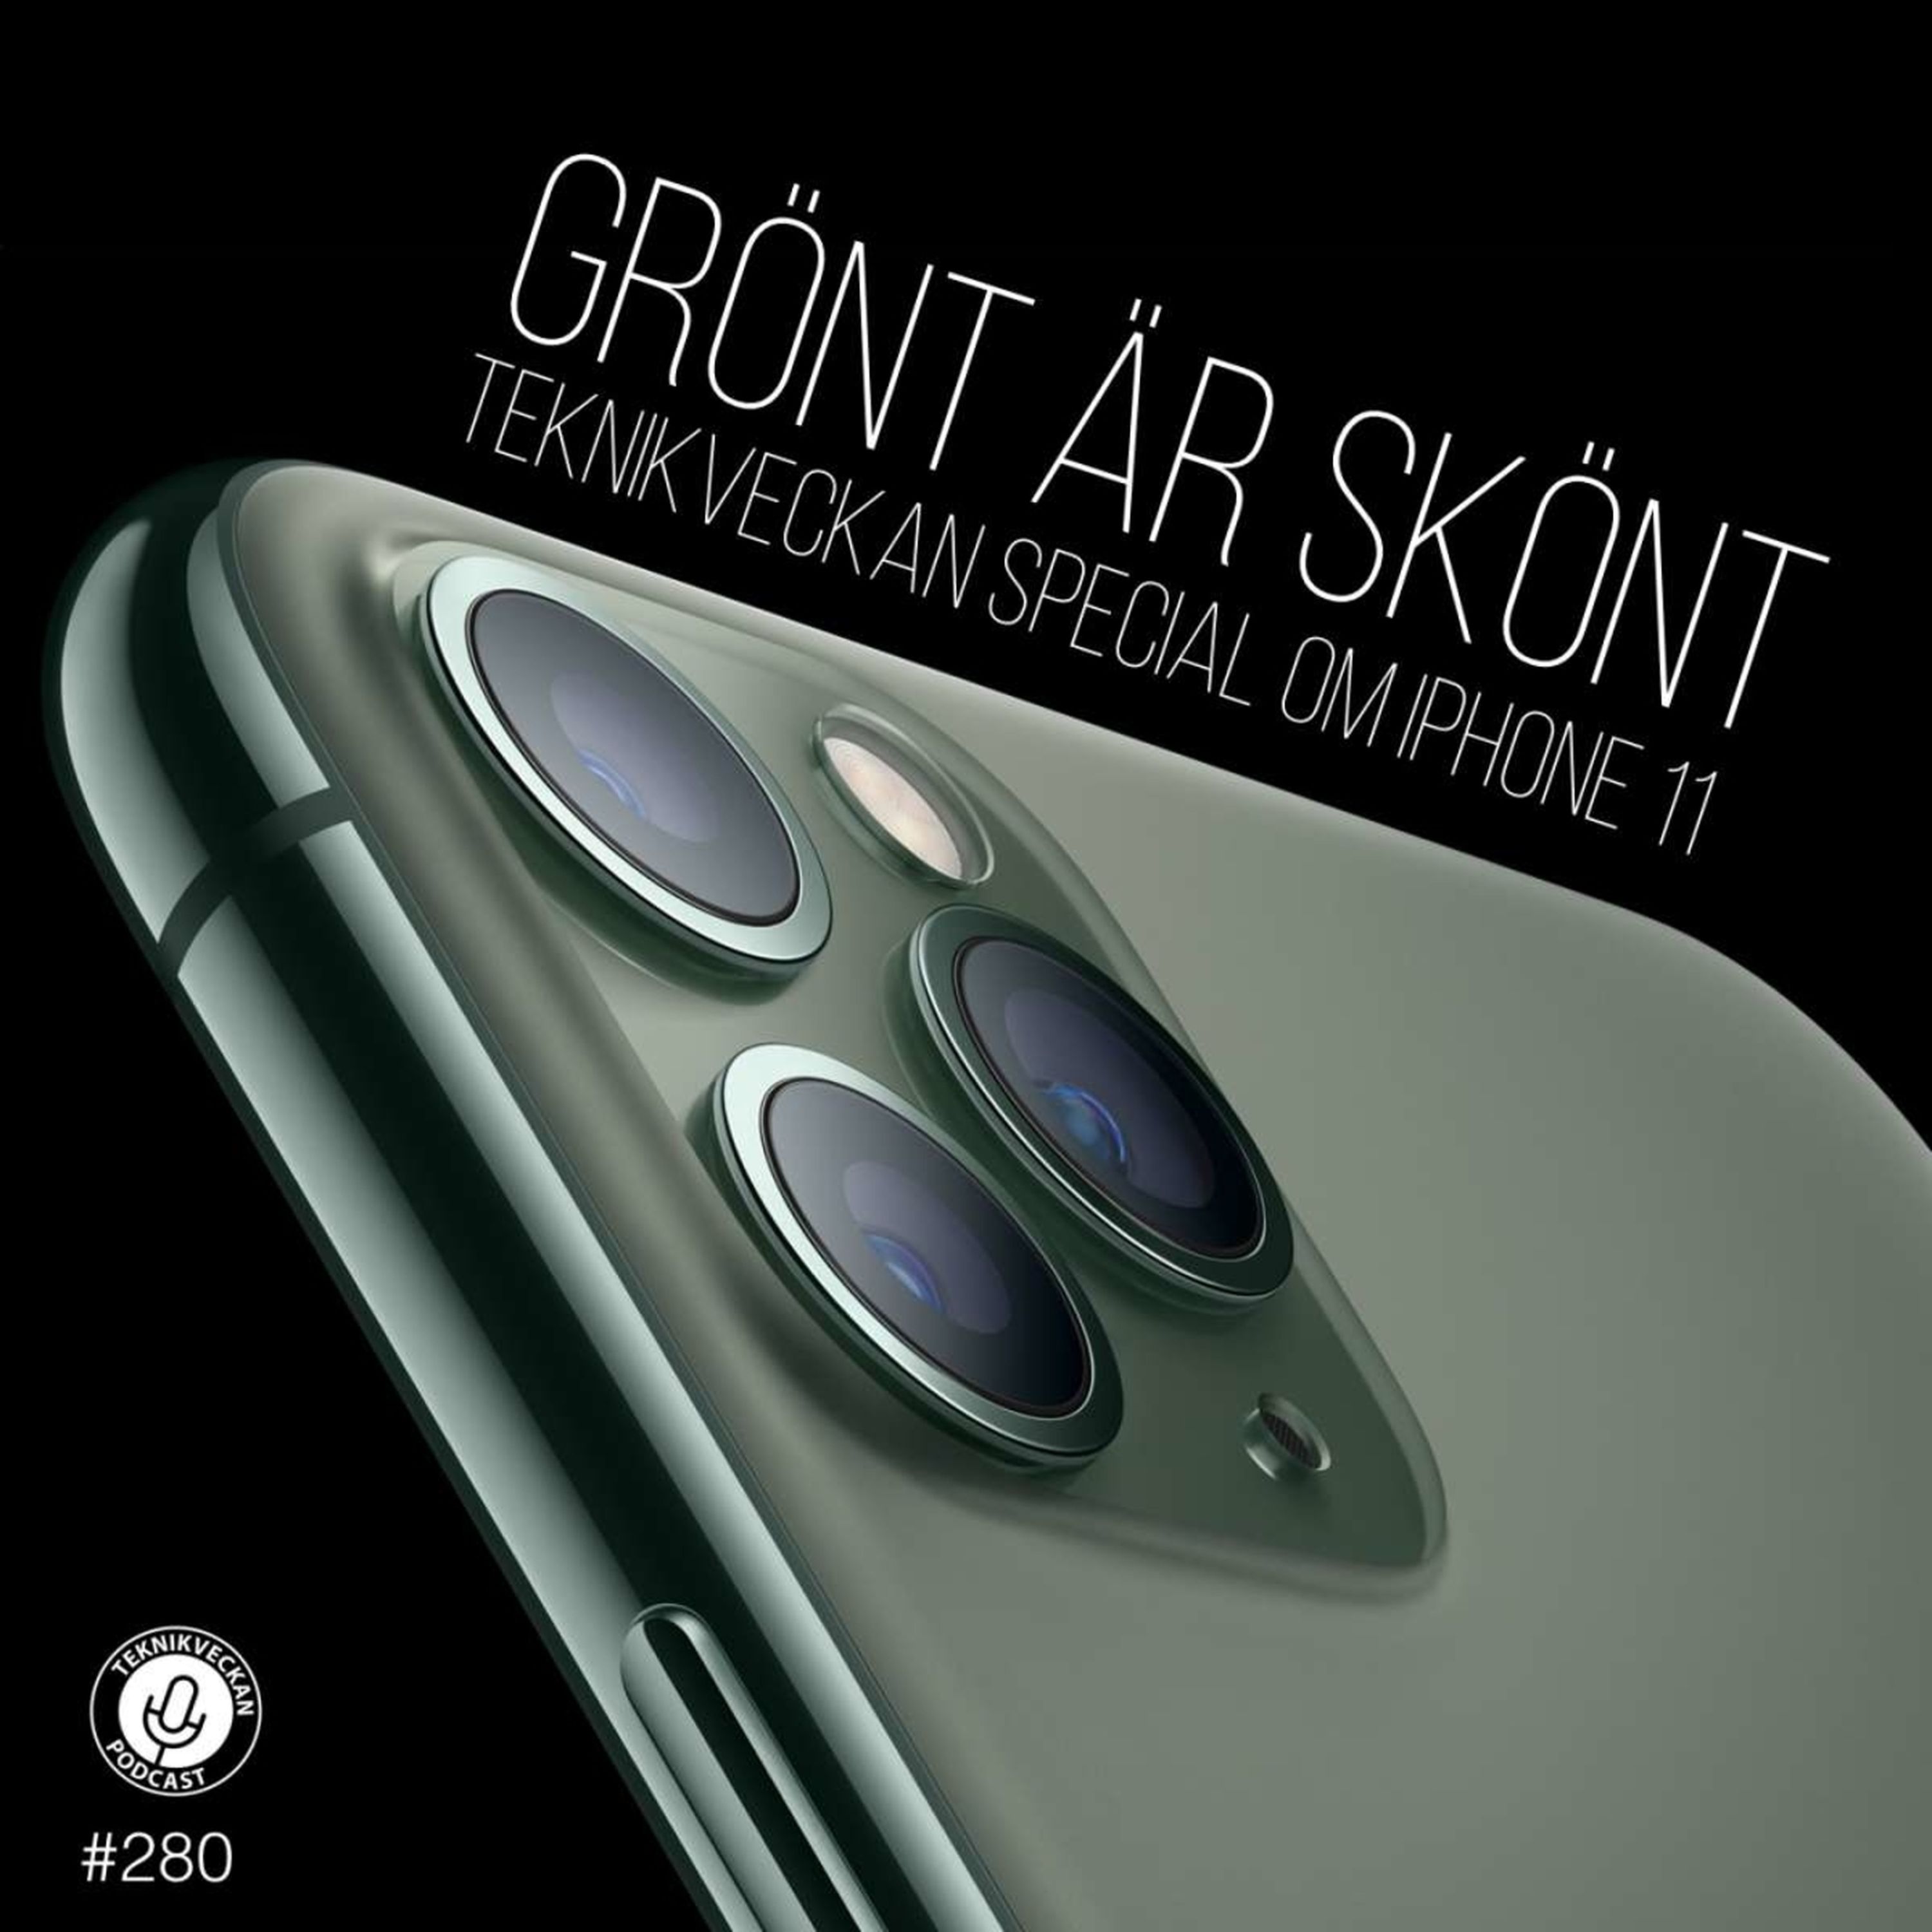 Grönt är skönt: Teknikspecial om iPhone 11